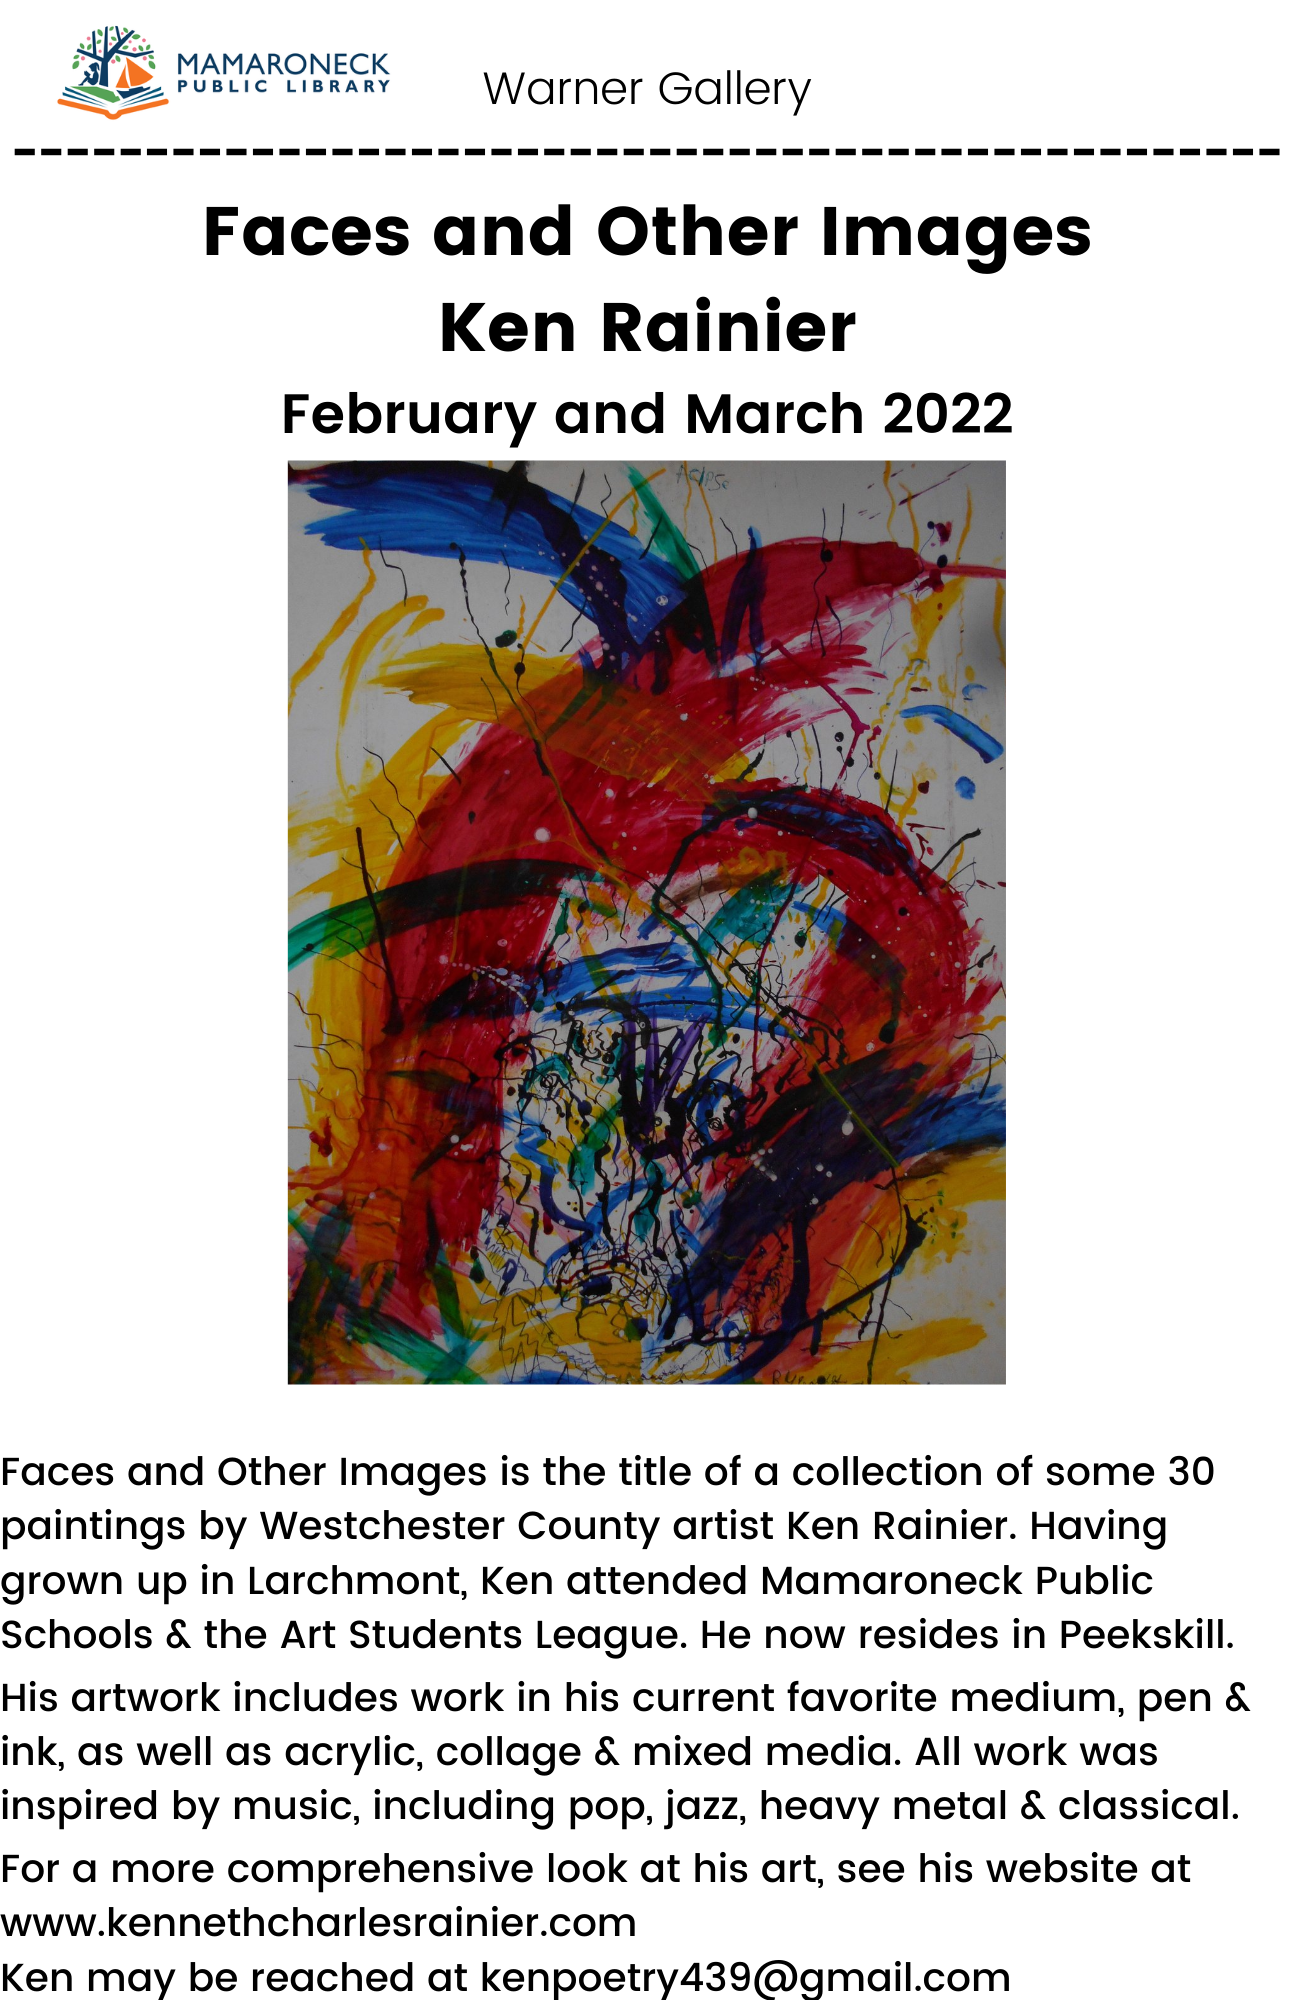 Warner Gallery new exhibit by Ken Rainier